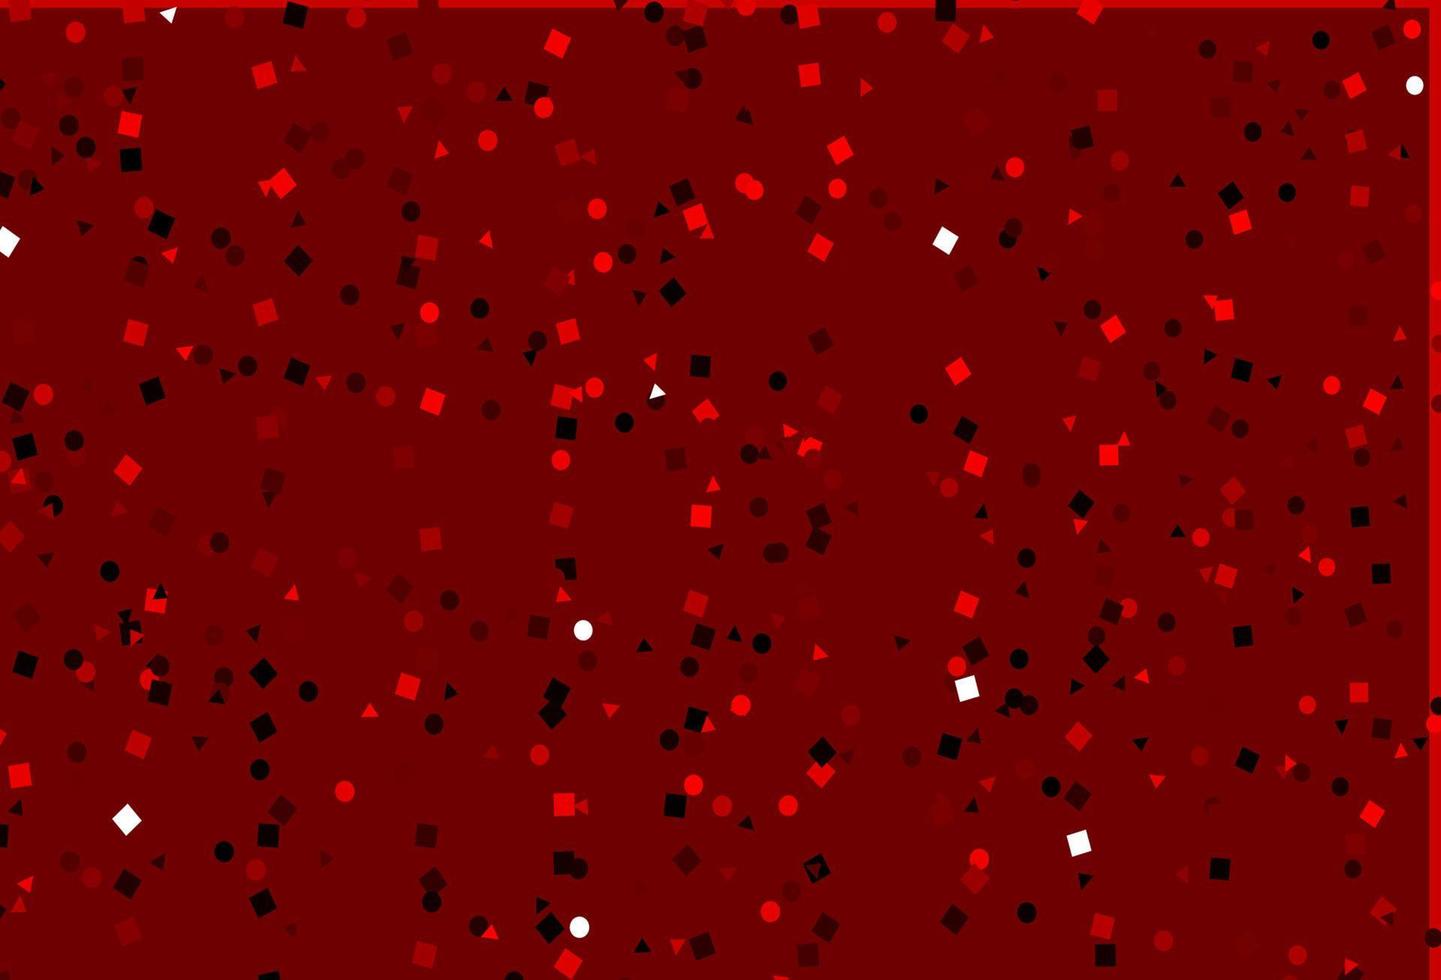 Telón de fondo de vector rojo claro con líneas, círculos, rombos.